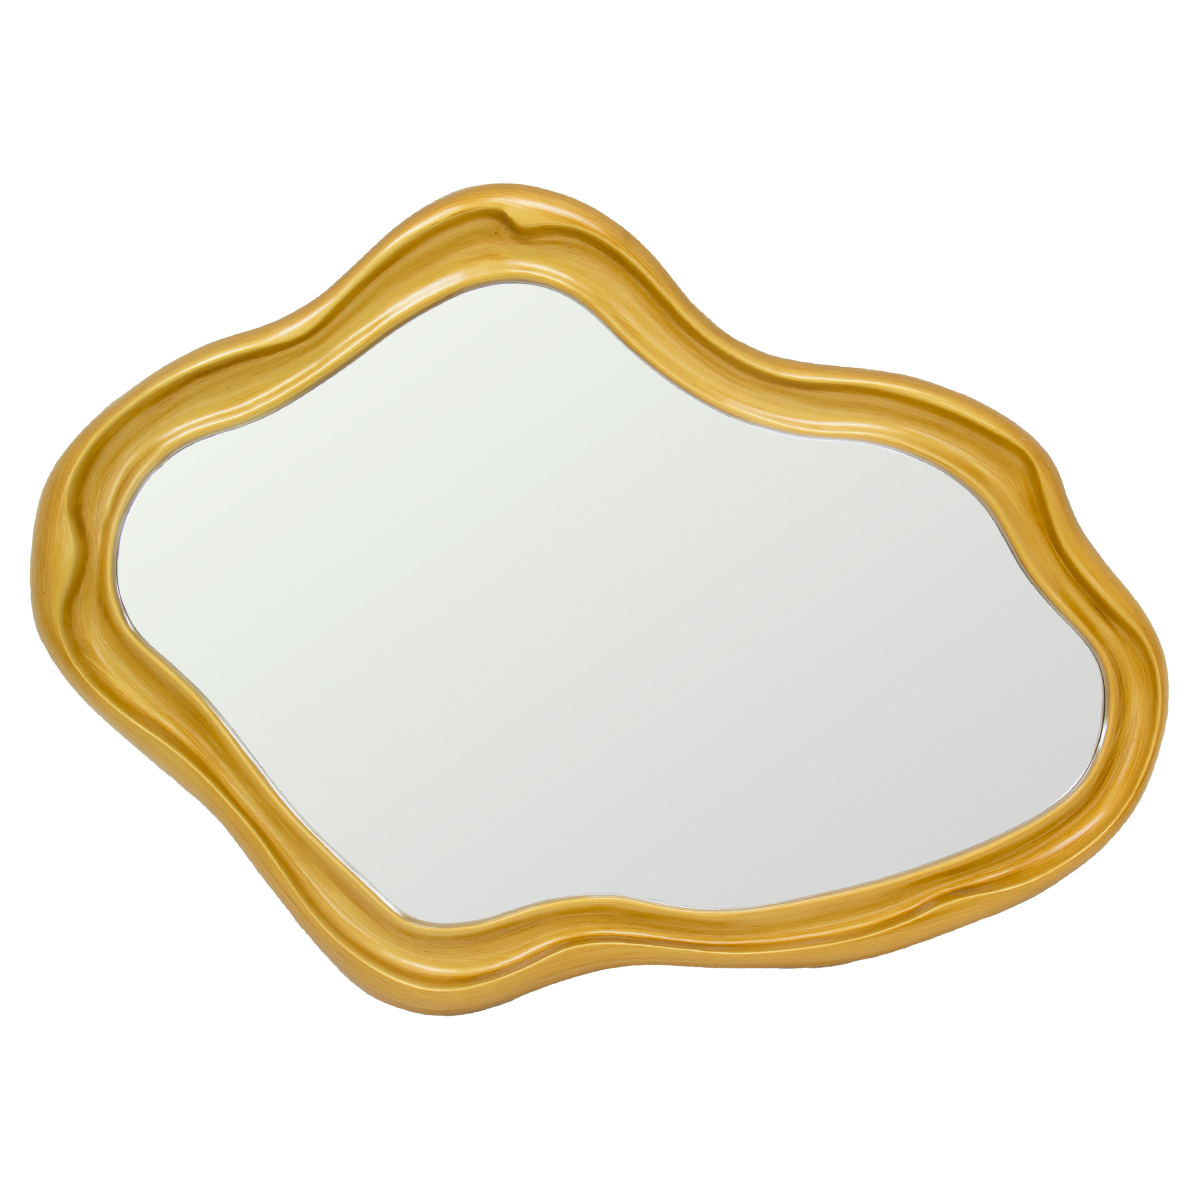 Colección de espejos decorativos ¿Ya - Tamarindo - tmrdo